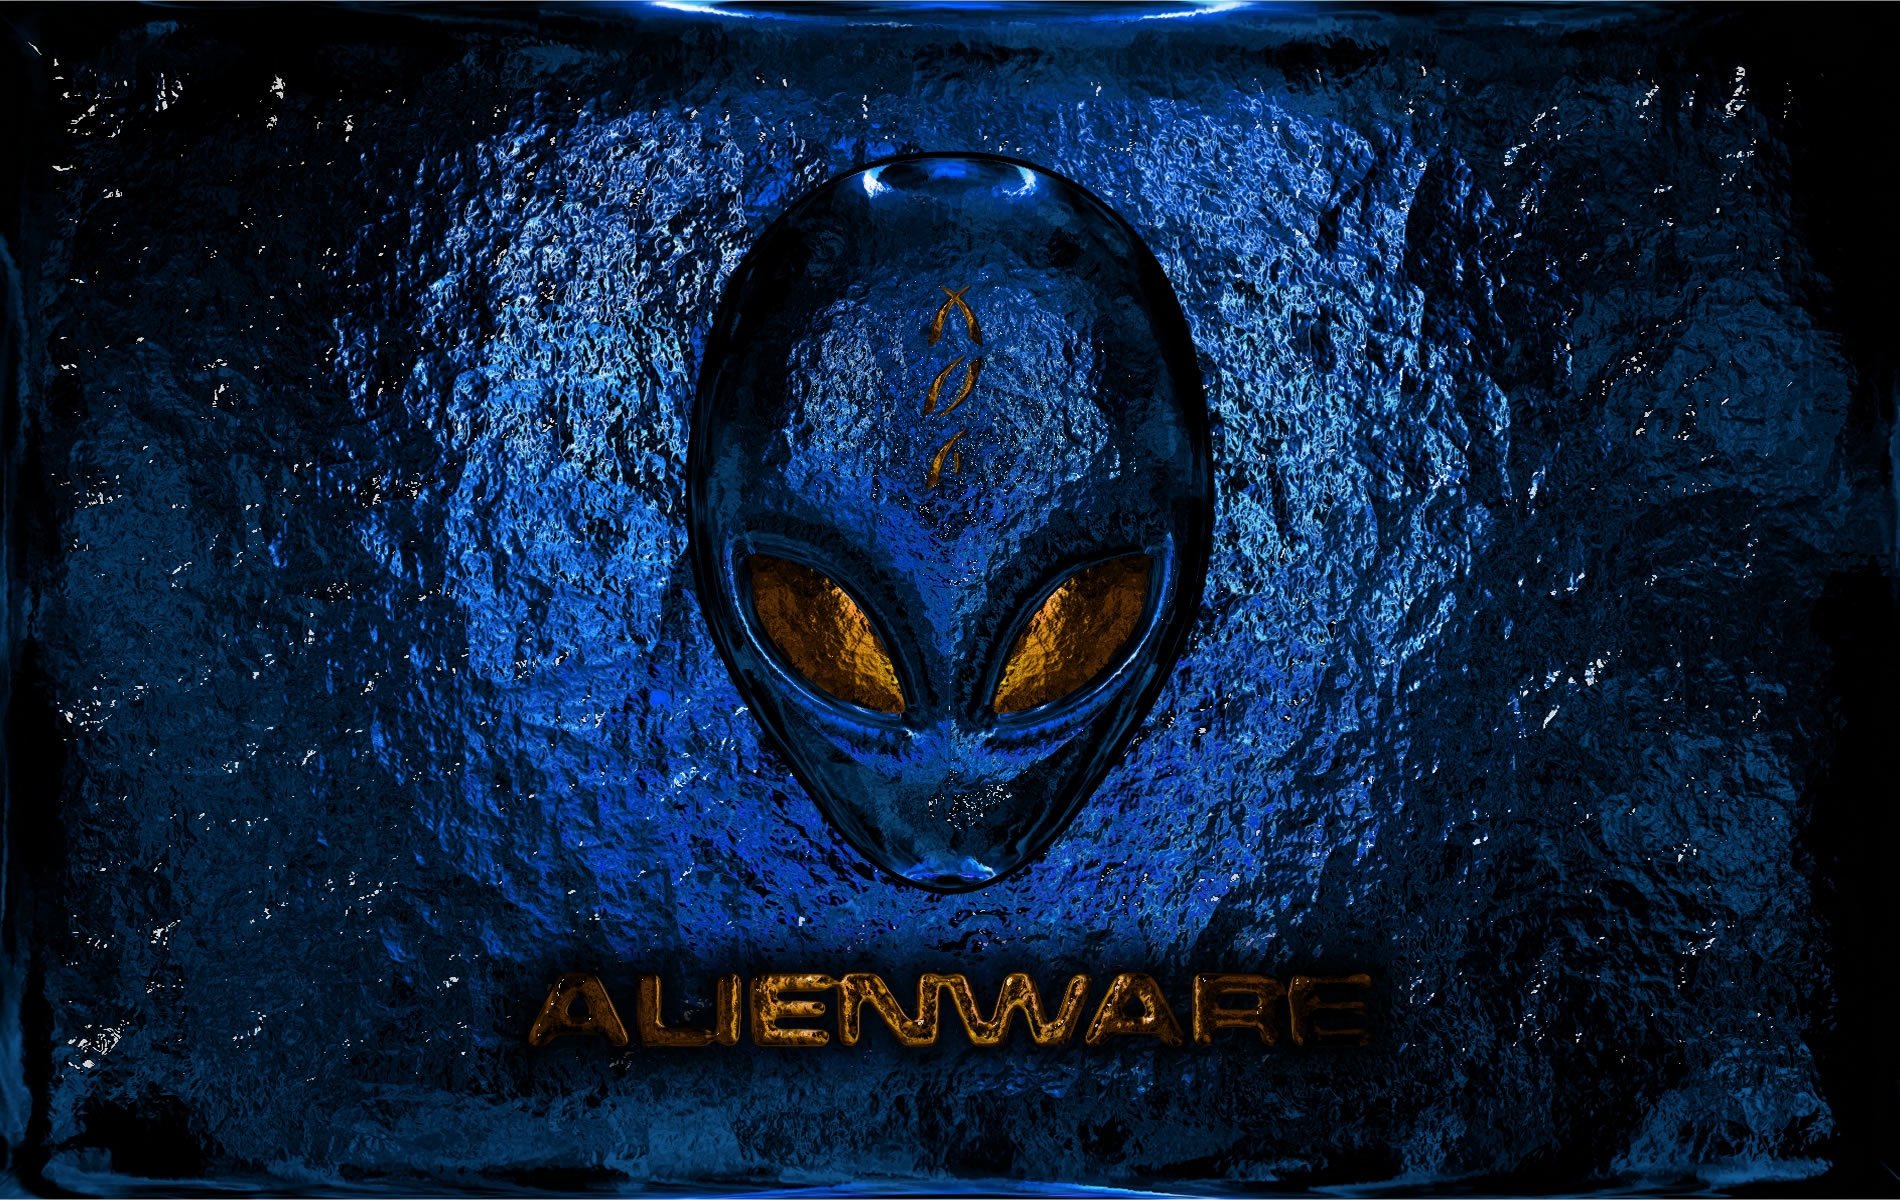 Spectacular Alienware Wallpaper For Desktop